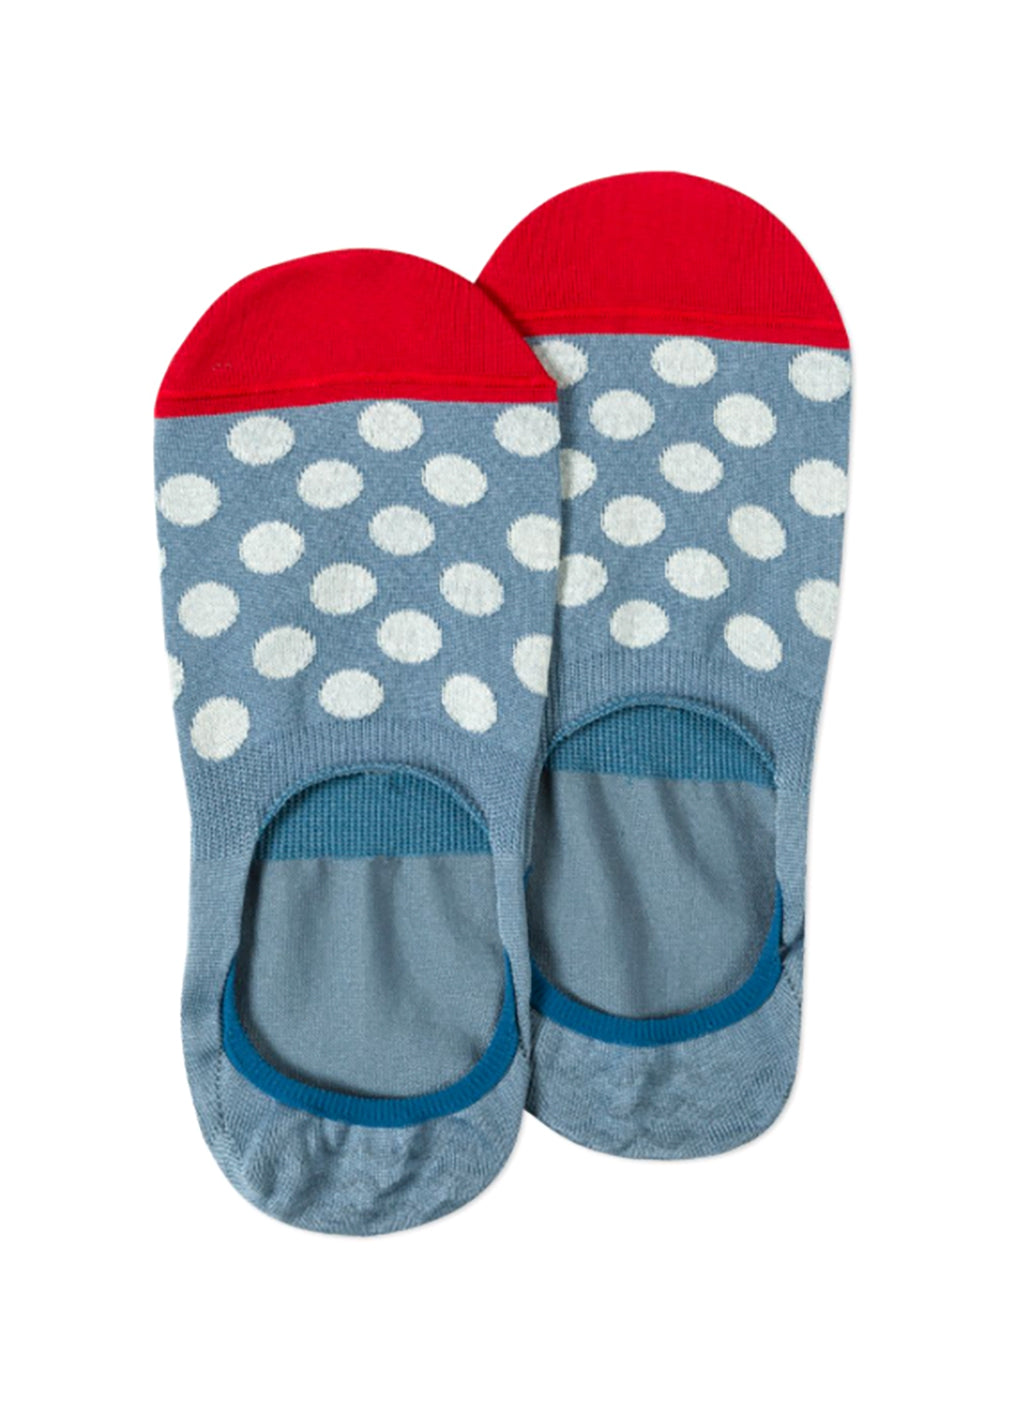 PAUL SMITH Men's Light Blue Polka Dot Loafer Socks